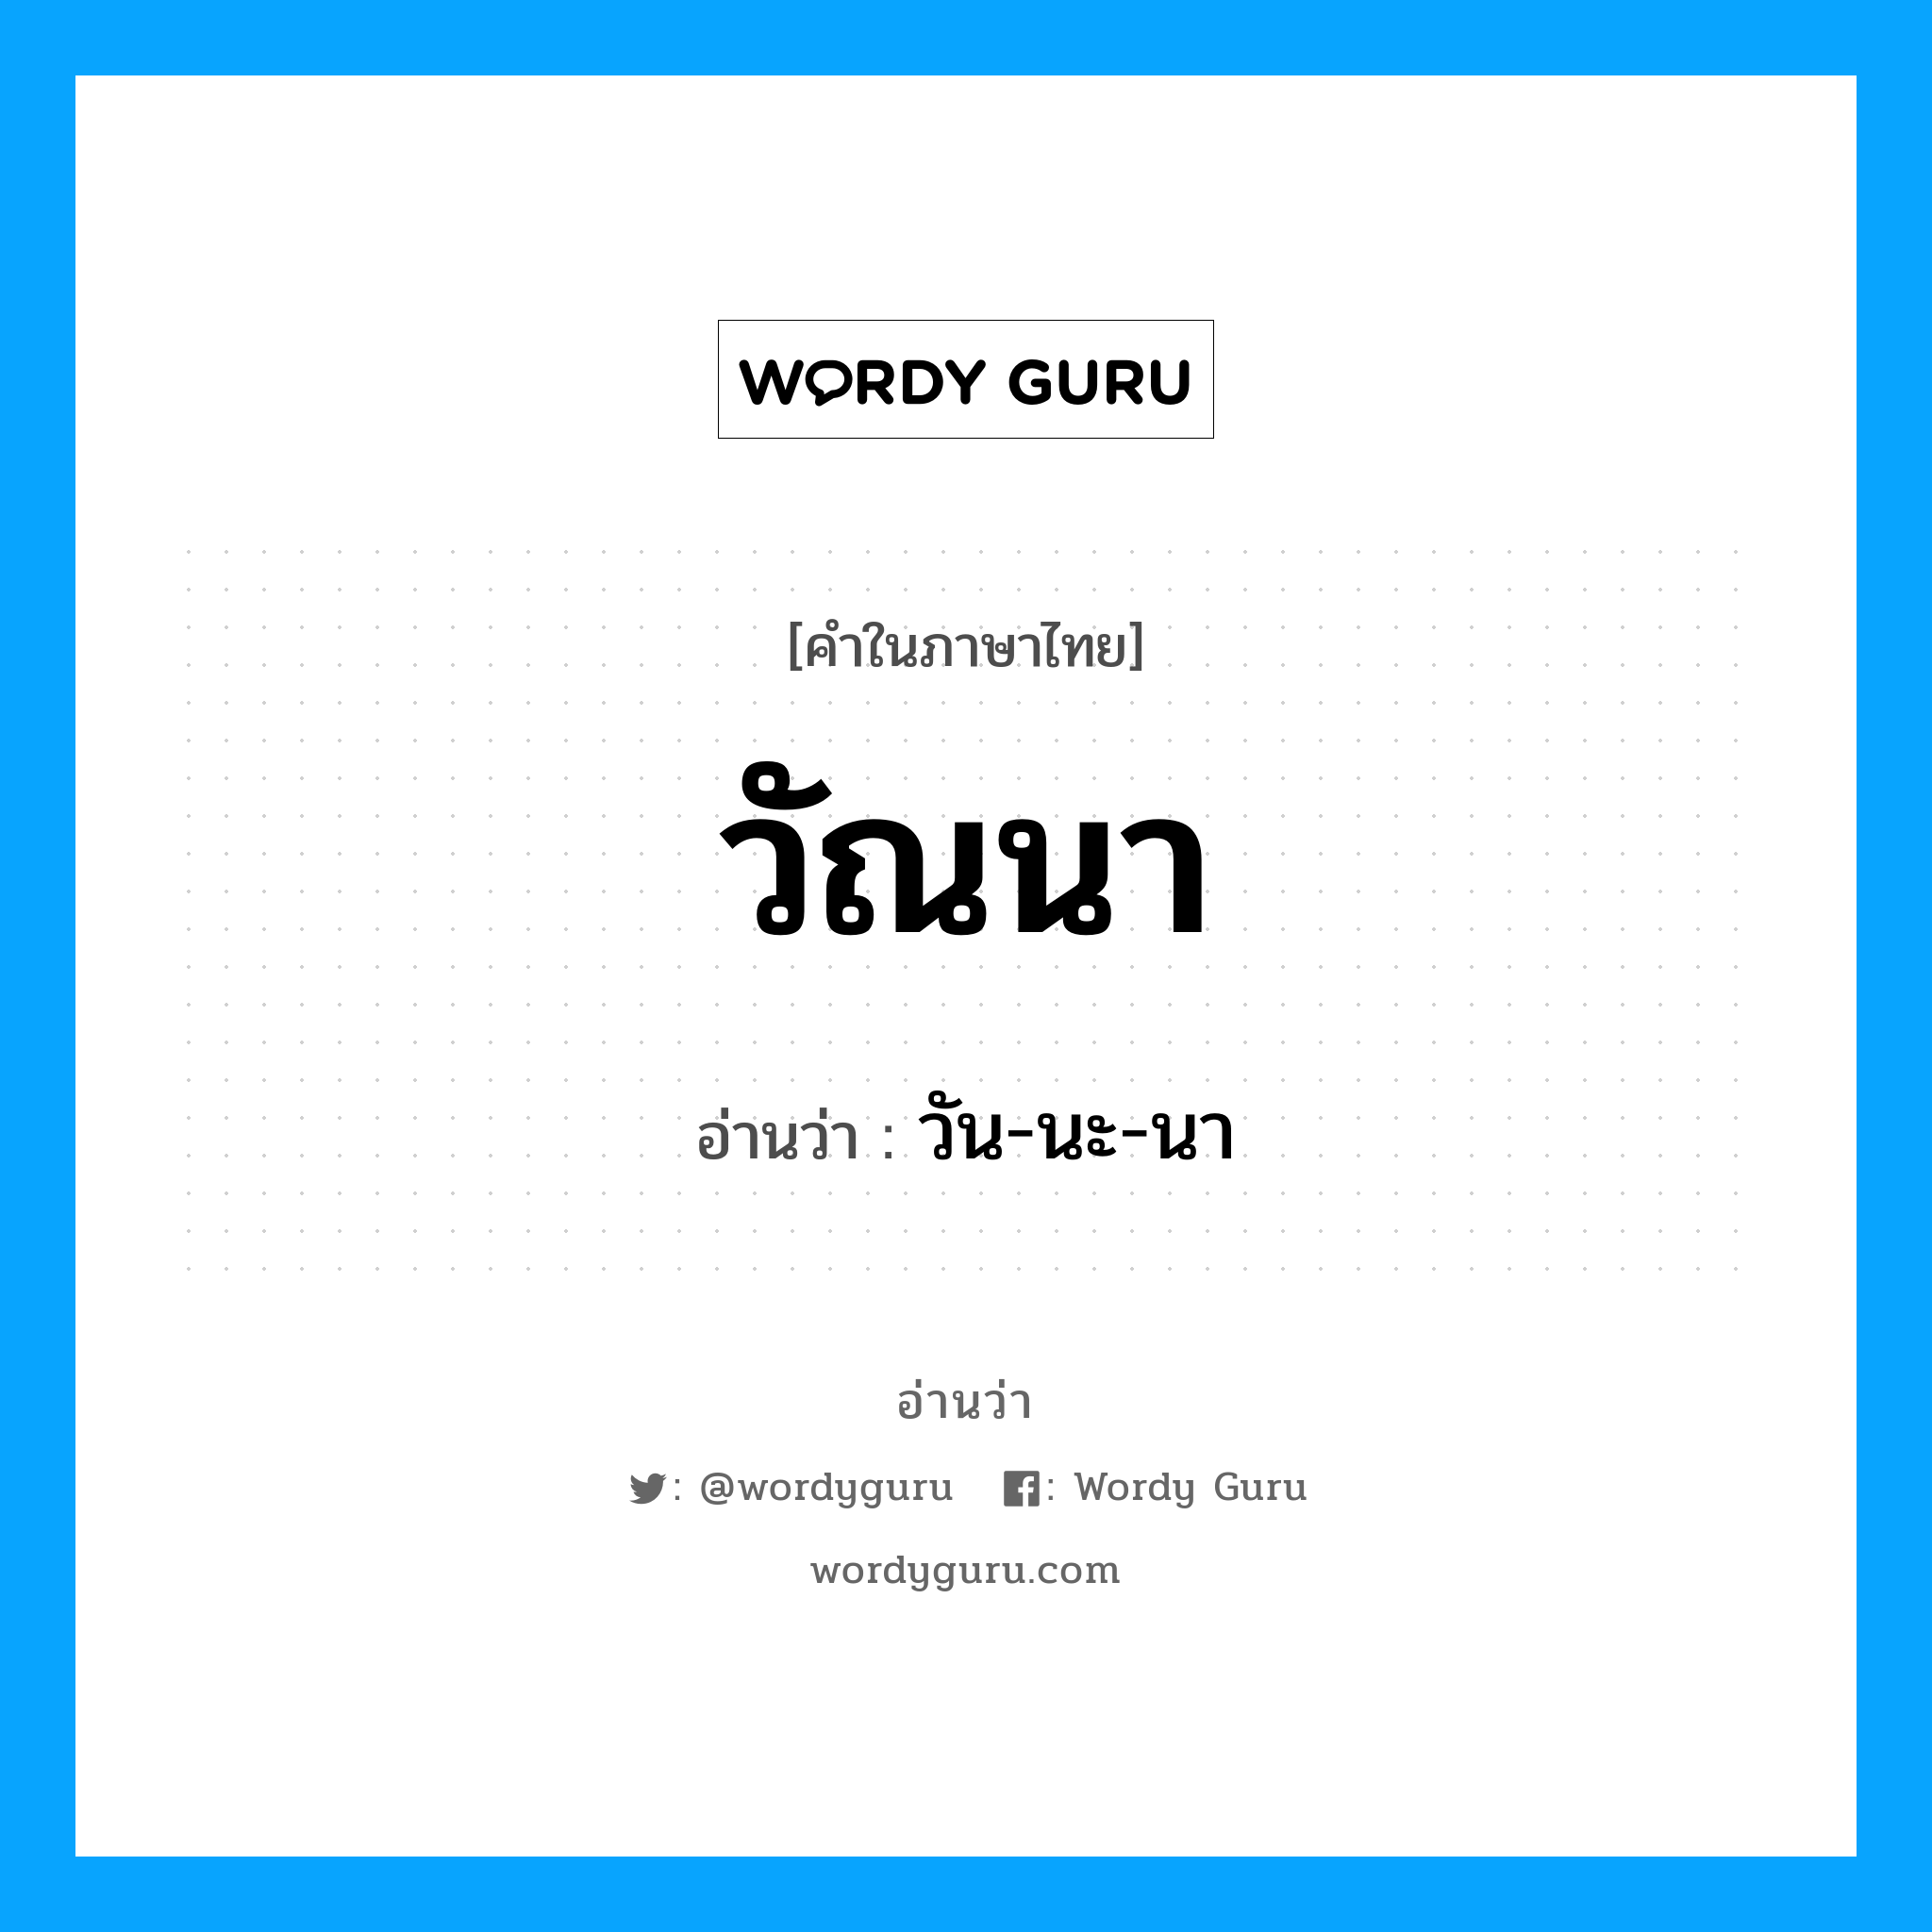 วัน-นะ-นา เป็นคำอ่านของคำไหน?, คำในภาษาไทย วัน-นะ-นา อ่านว่า วัณนา